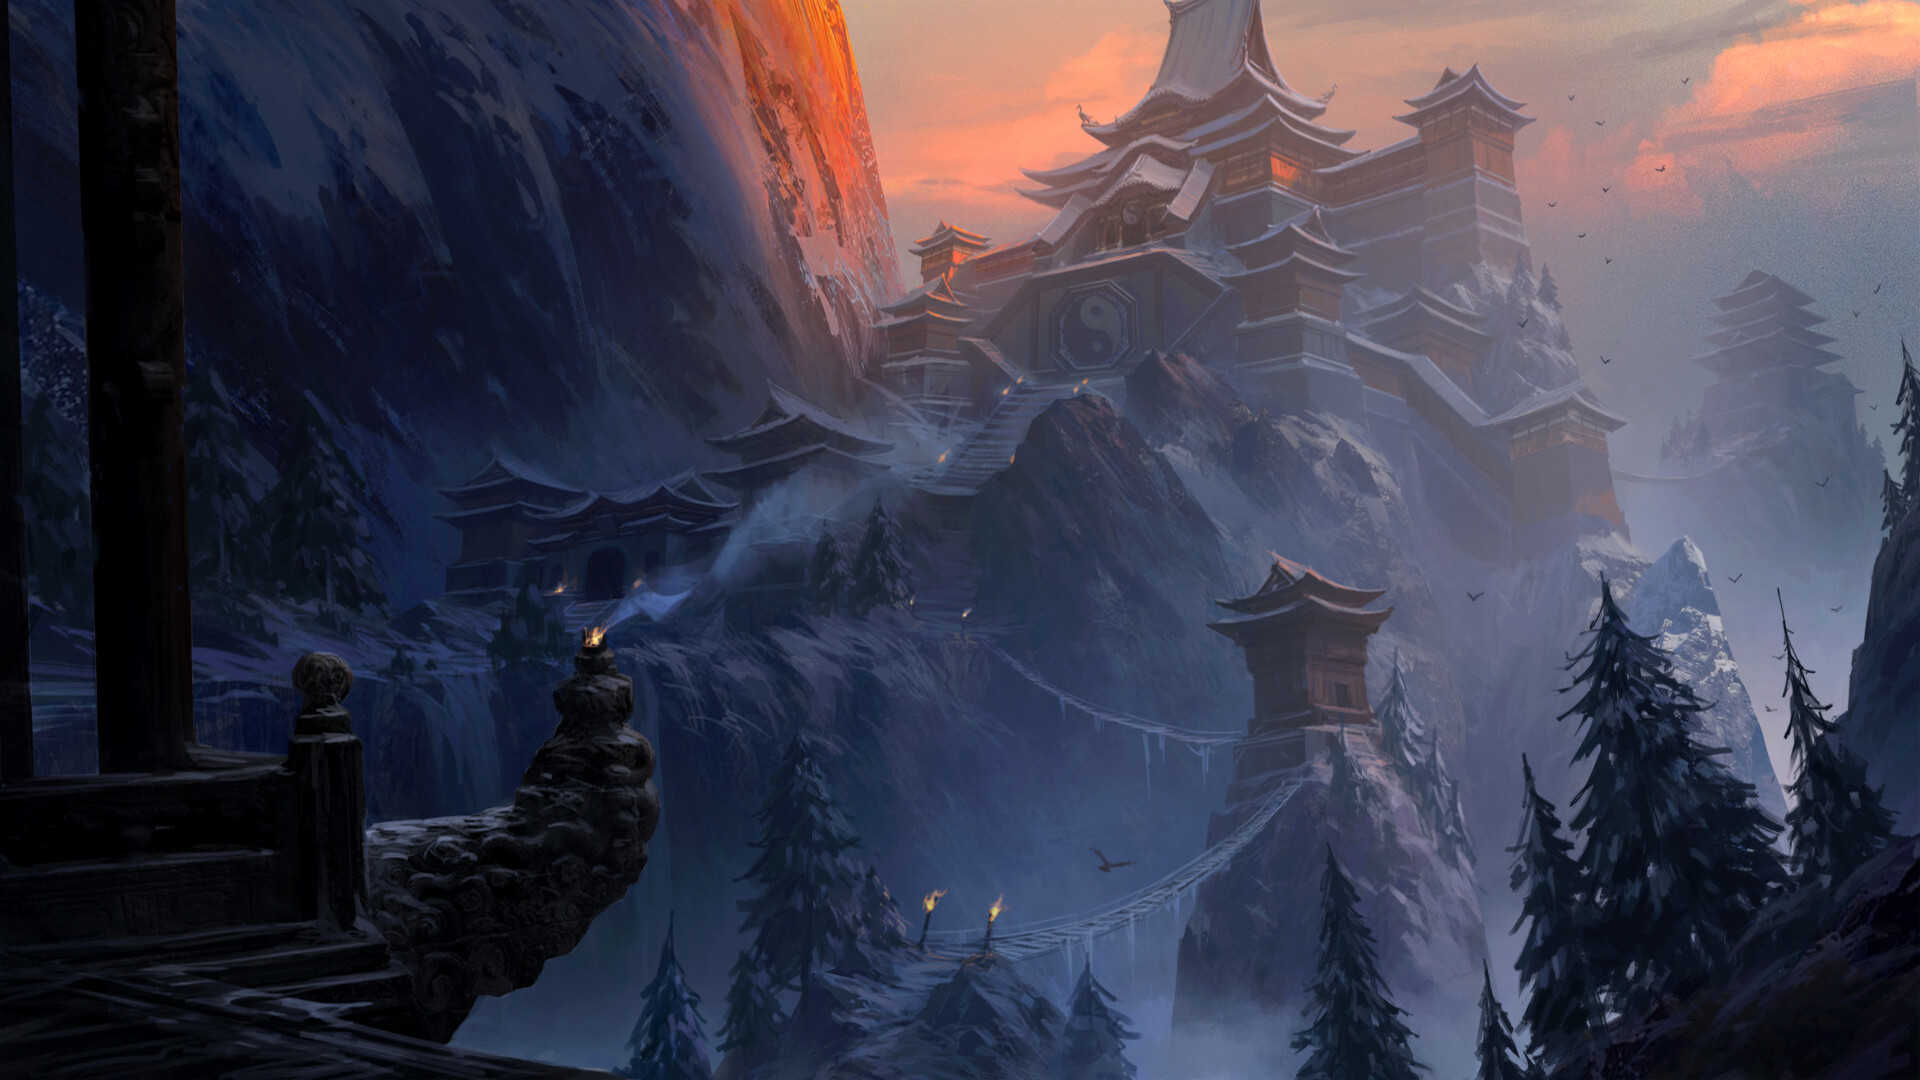 Taoist Temple on the snowy mountain by Haoran Li HD Wallpaper